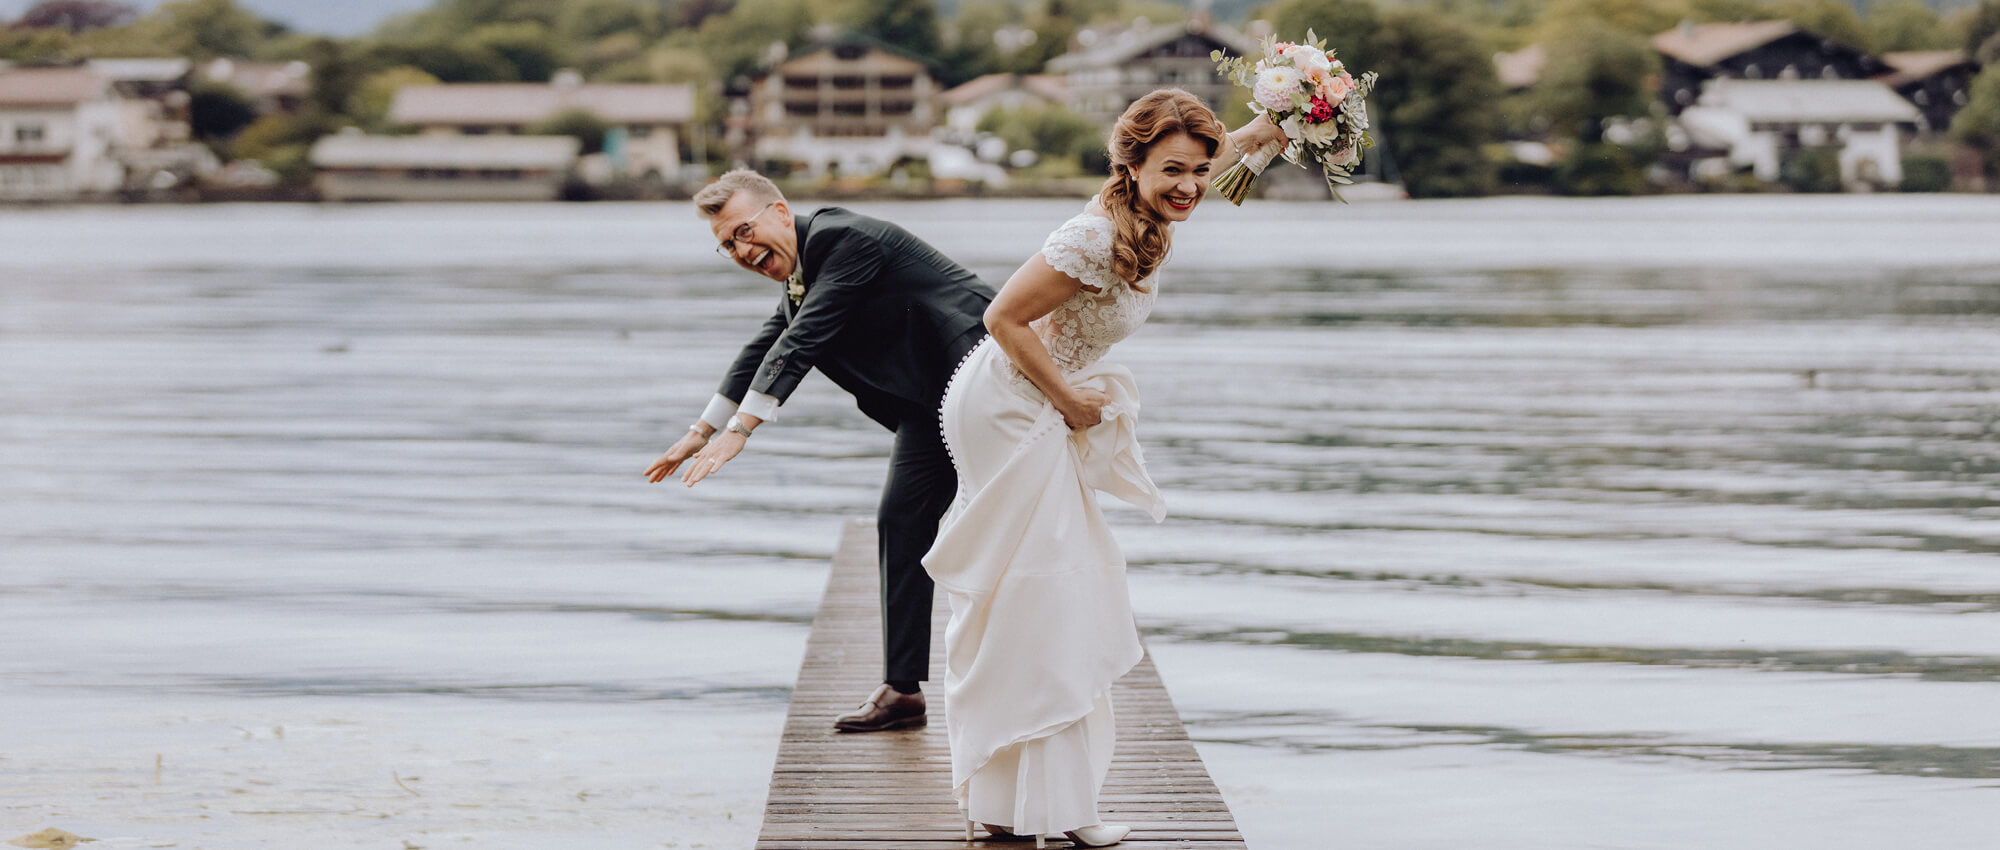 Hochzeit am See in Bayern planen